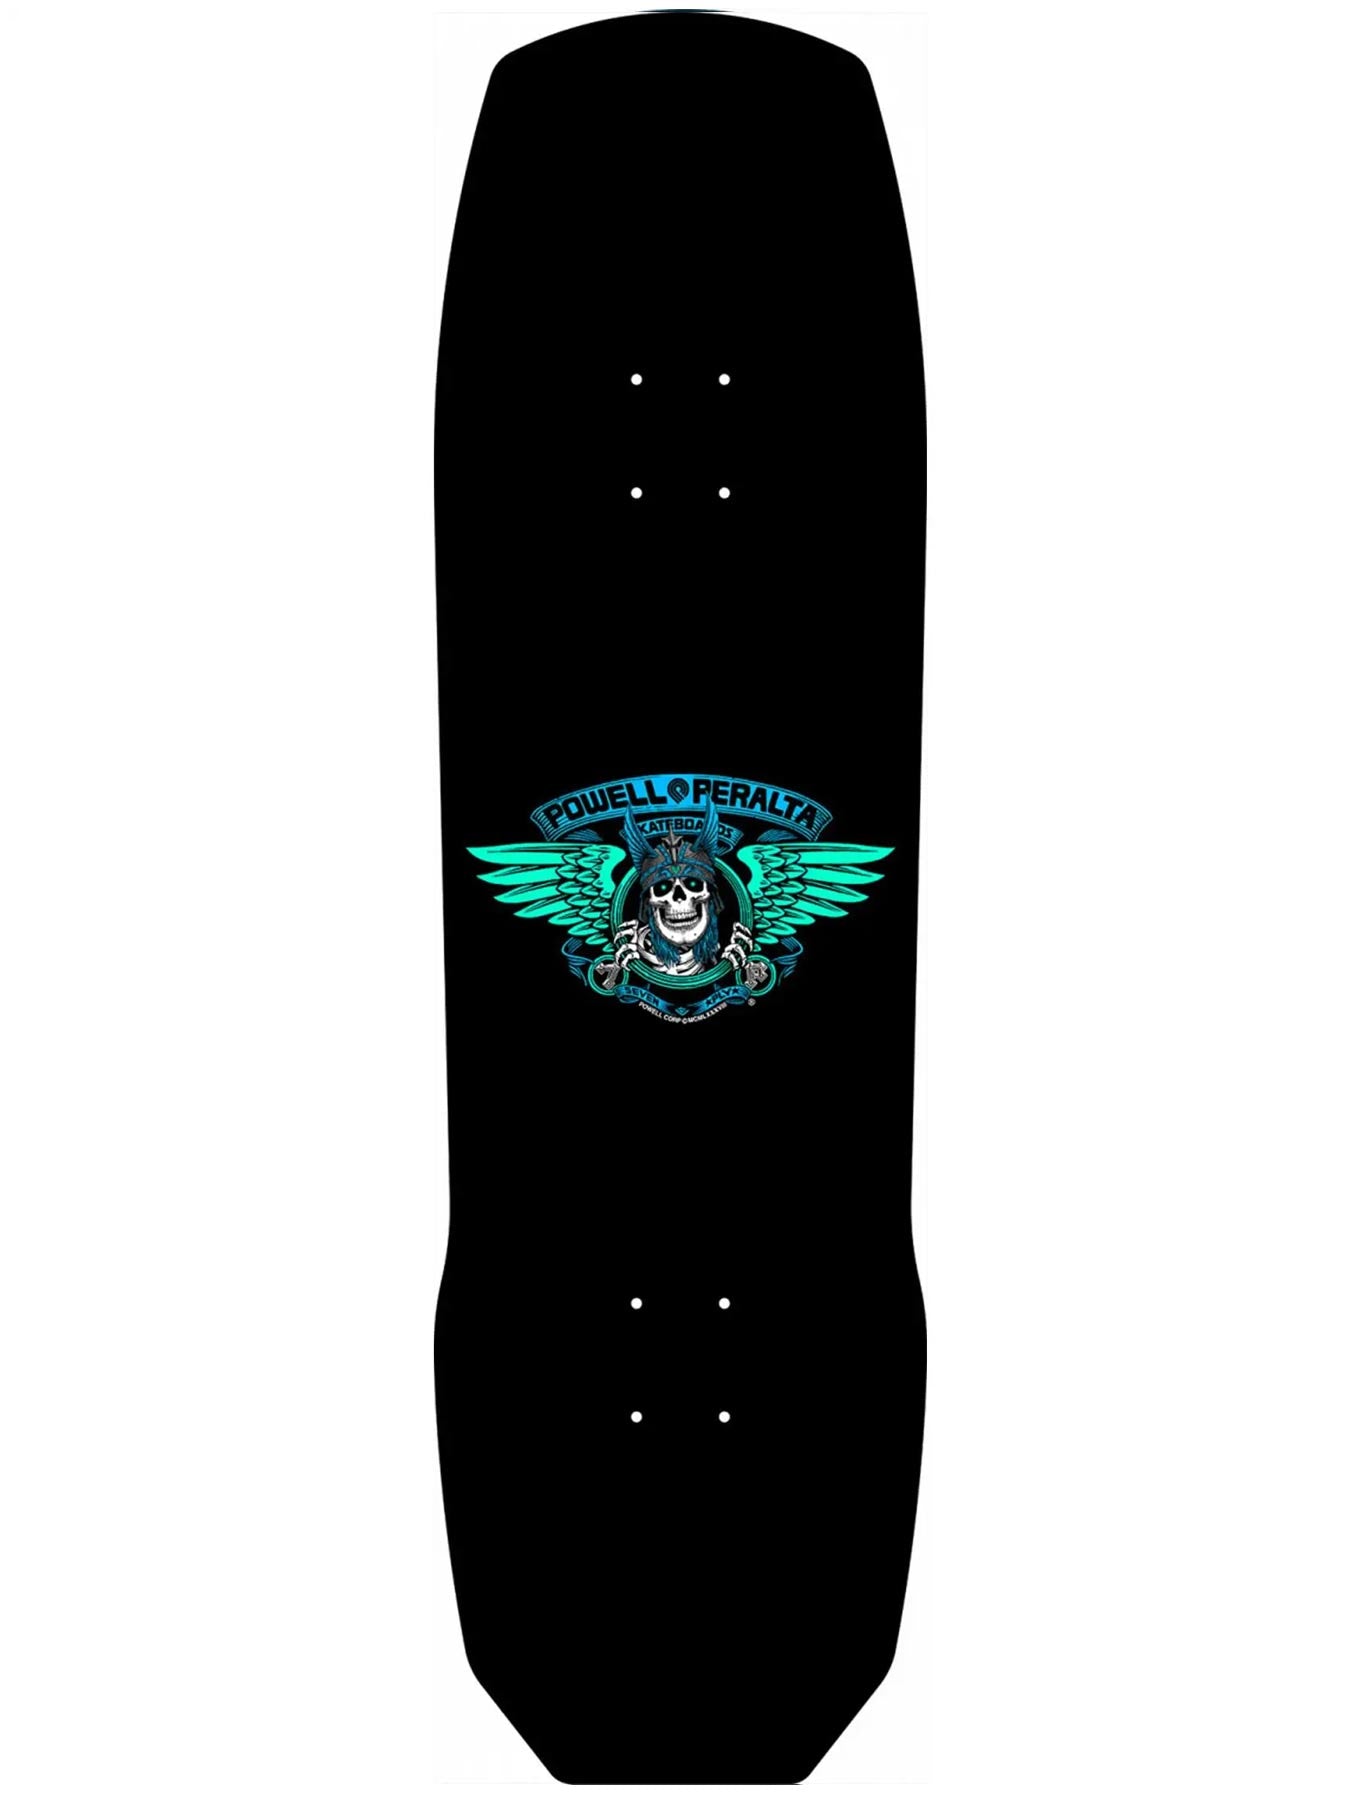 Planche de skateboard Powell Peralta Pro Andy Anderson Heron 7 plis - 9,13 x 32,8 | Nouveaux produits | Produits les plus récents | Produits les plus vendus | surfdevils.com